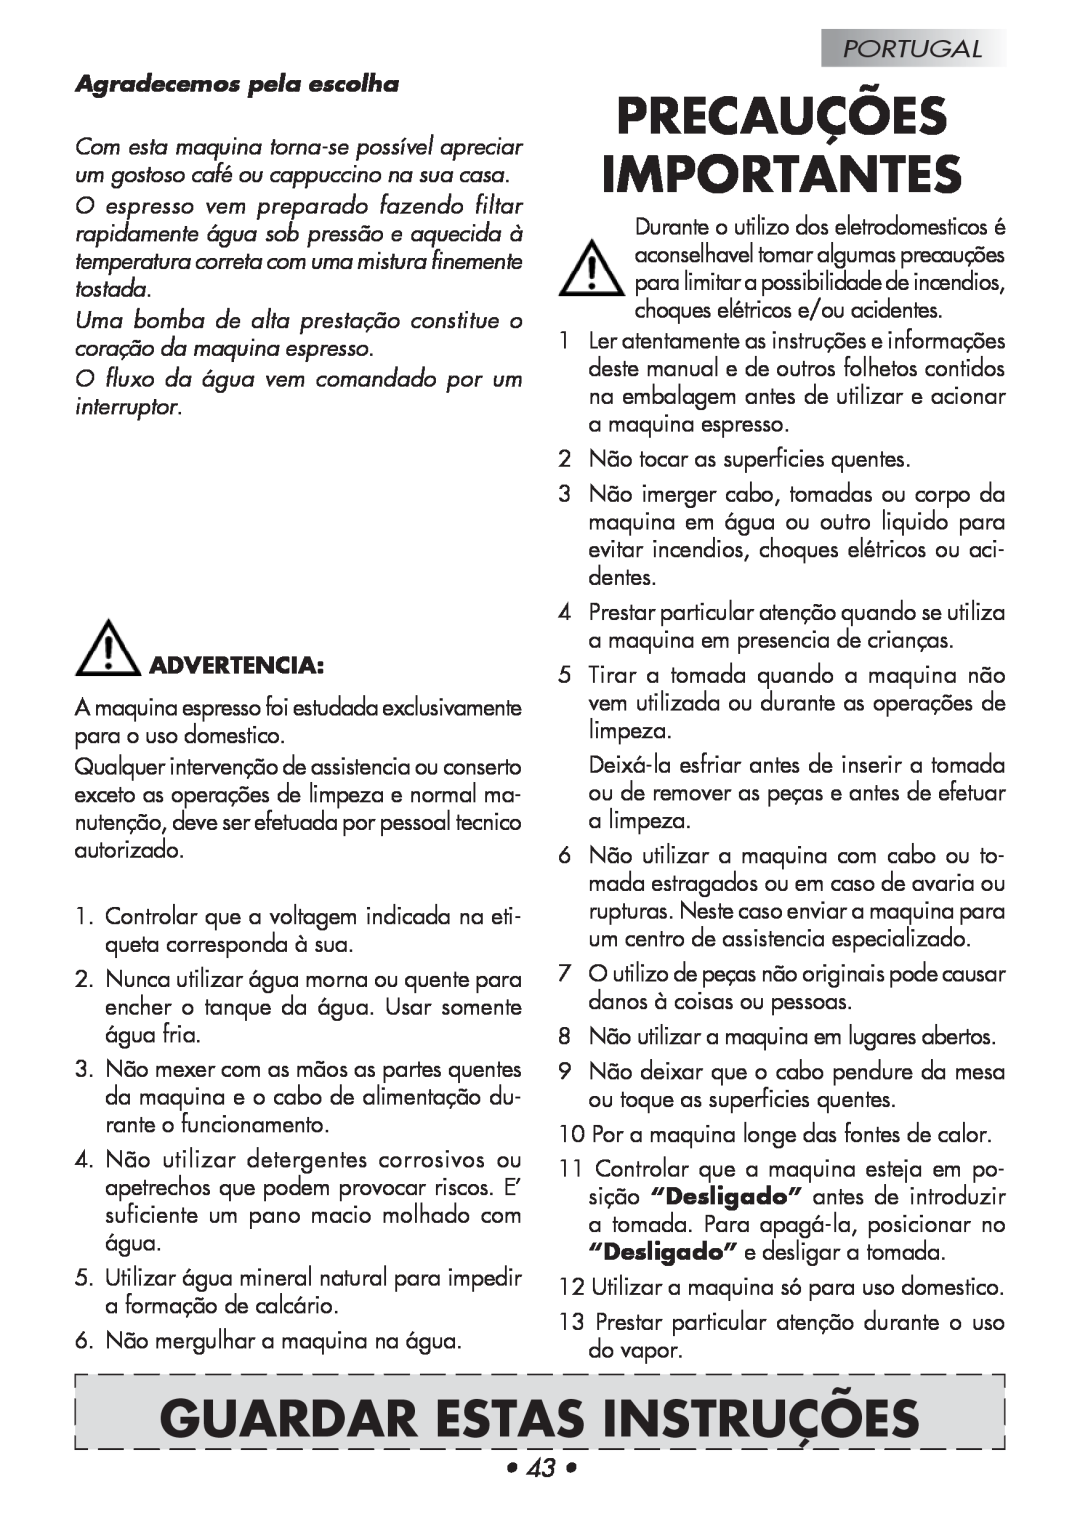 Gaggia Baby manual Precauções Importantes, Guardar Estas Instruções, Agradecemos pela escolha, Advertencia, Portugal 